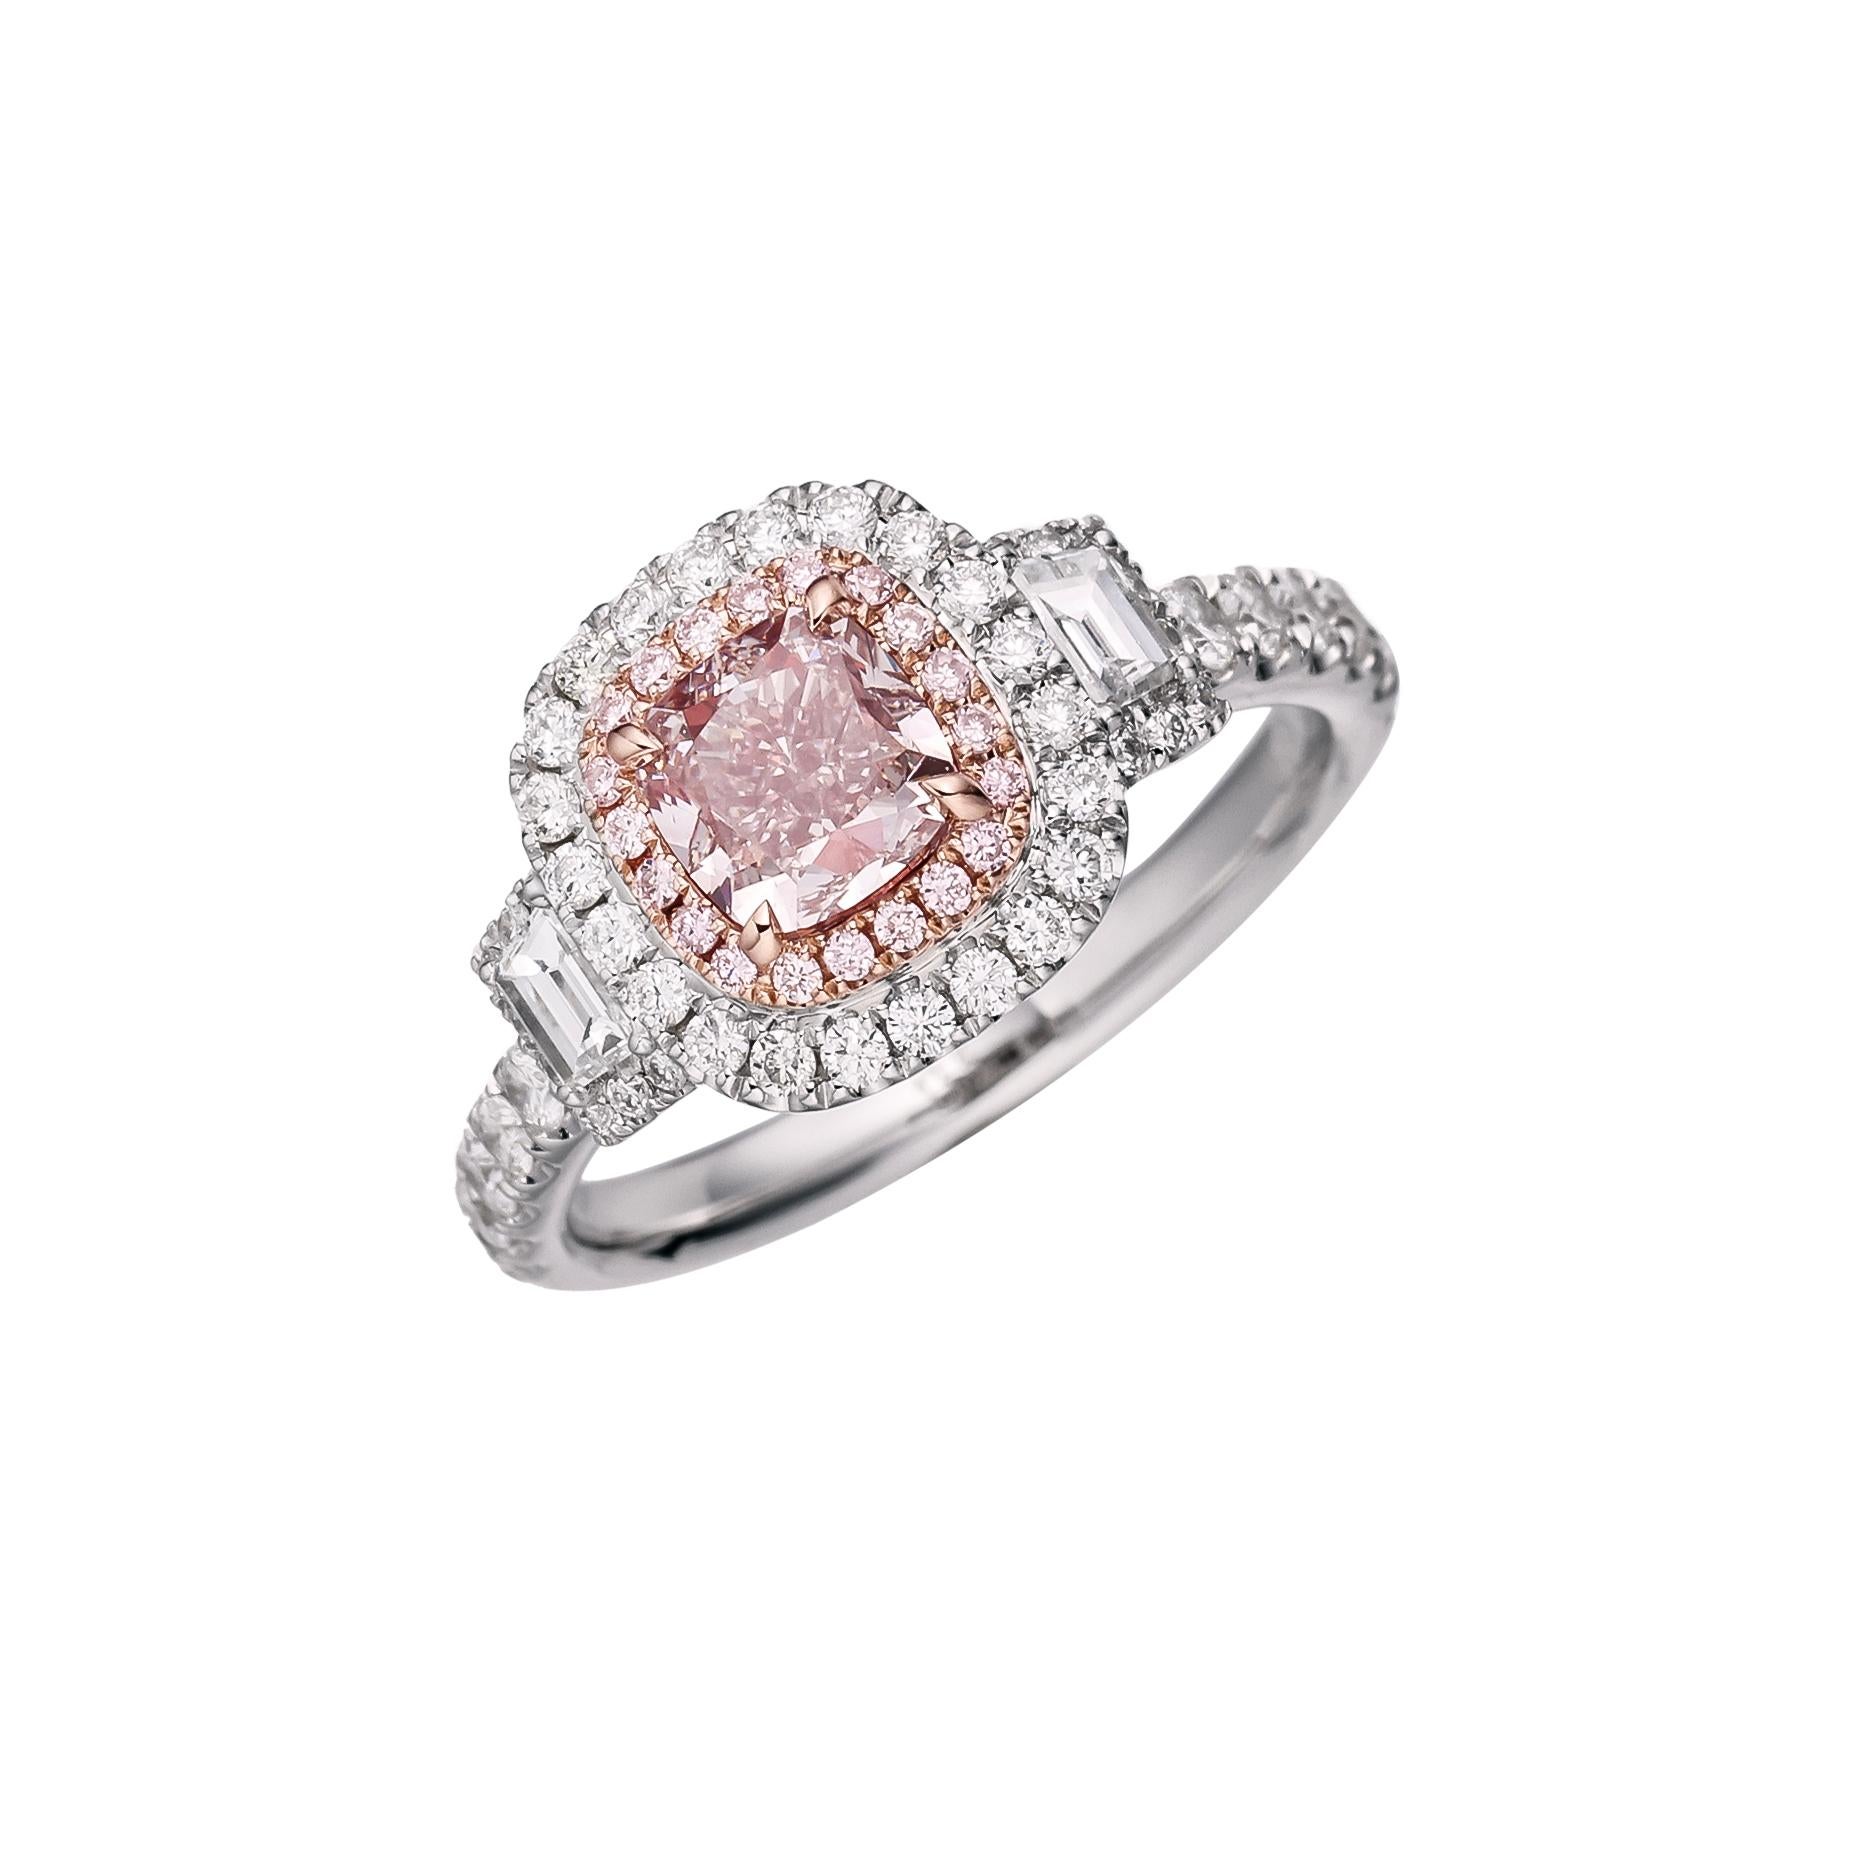 Dévoilez l'Elegance : La luxueuse bague en diamant naturel taille coussin de 1,01ct certifié par la GIA est une véritable incarnation de la beauté rare et de la sophistication. Montée sur un resplendissant anneau en or 18kt, cette bague témoigne de